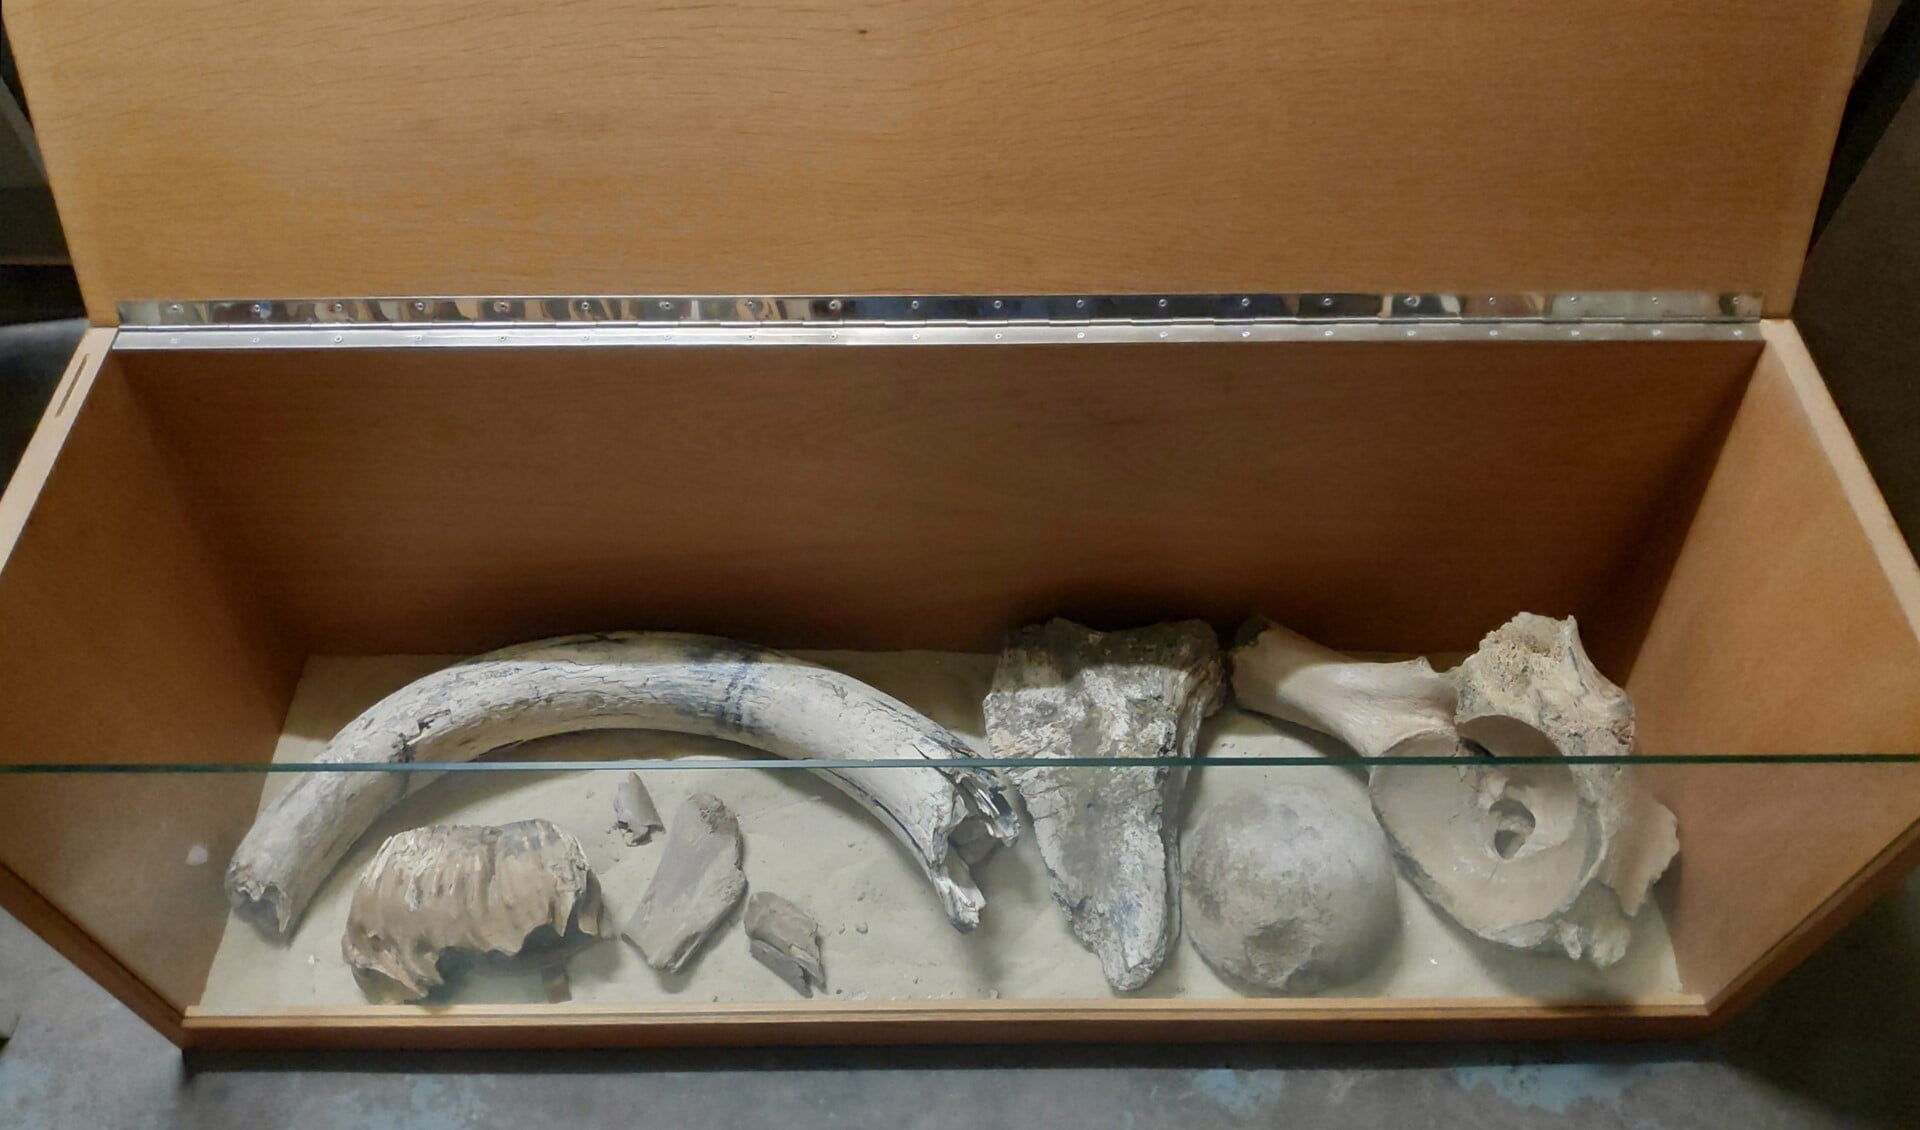 Vitrinekist met mammoetbotten, gevonden tijdens aanleg Tolhek. (foto: Paul Hogervorst)